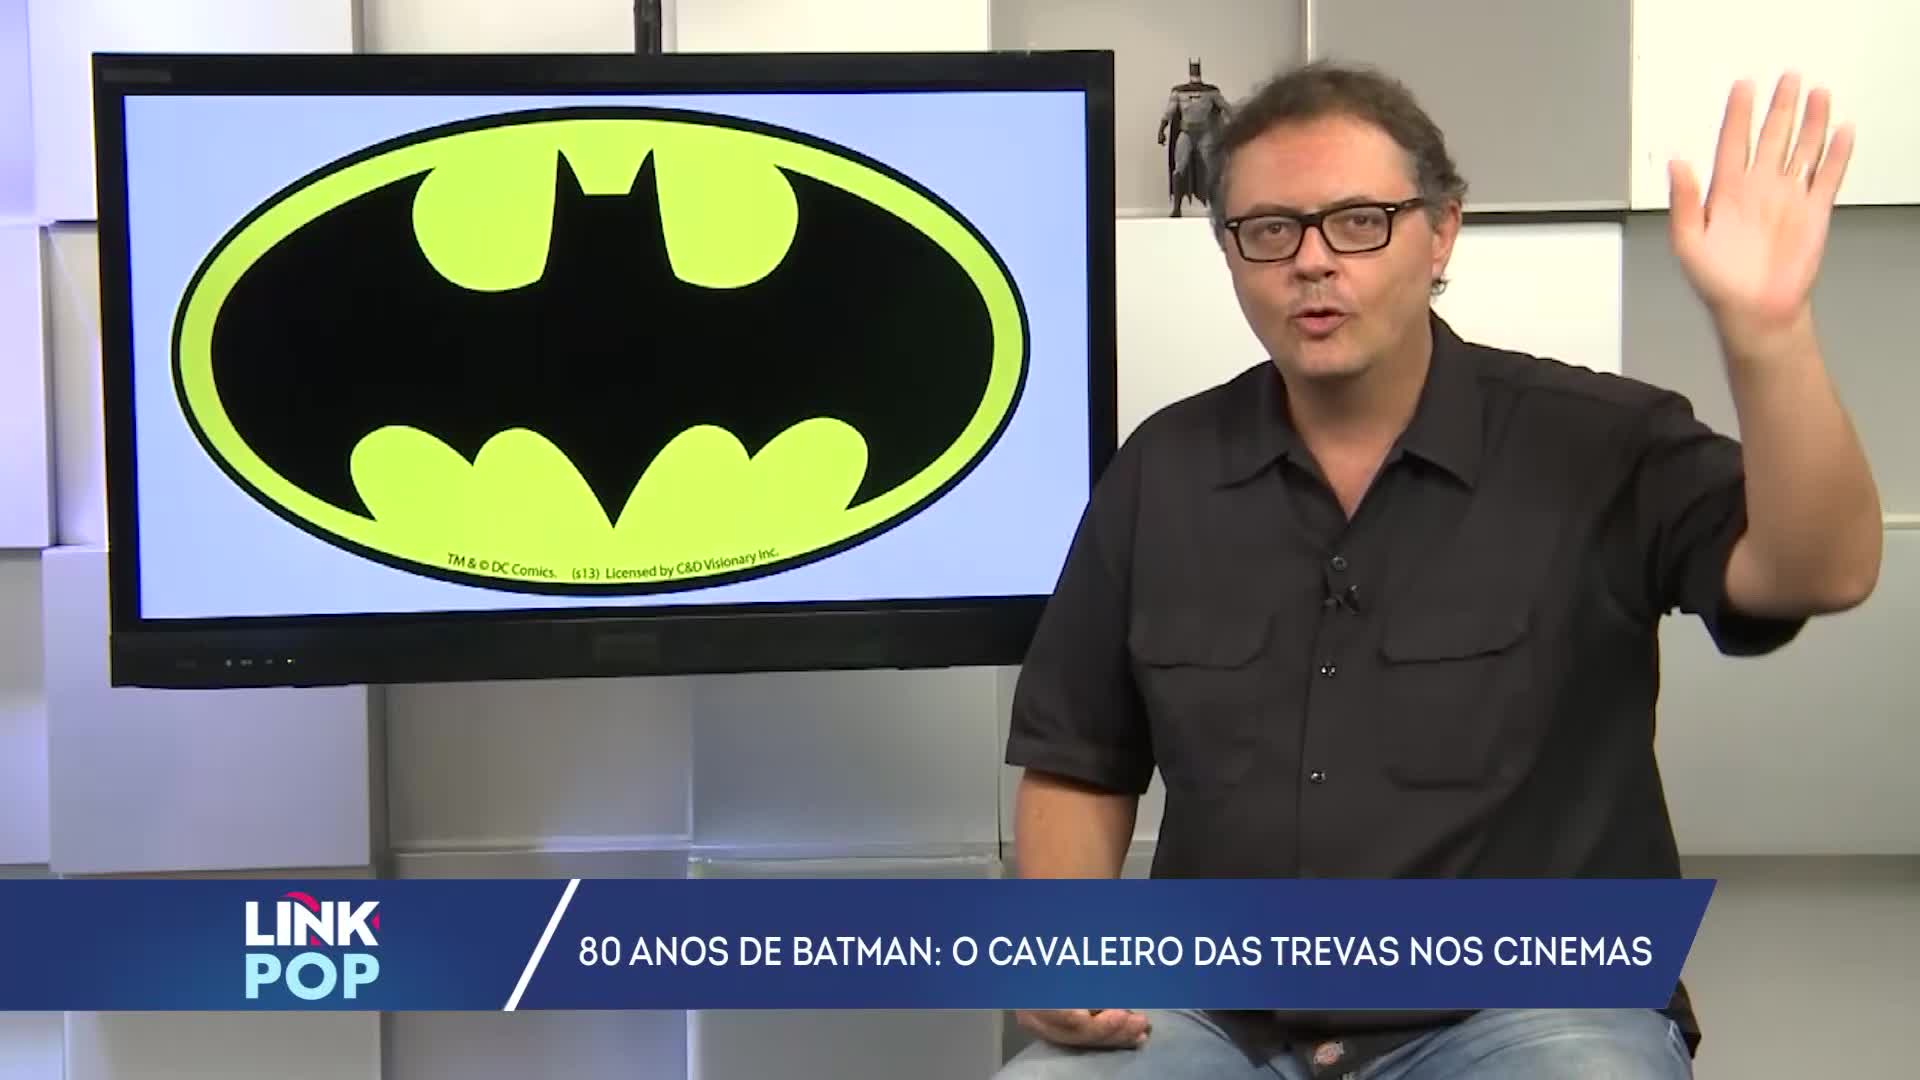 Vídeo: 80 anos de Batman: A trajetória do Cavaleiro das Trevas nas mídias com Odair Braz Jr.